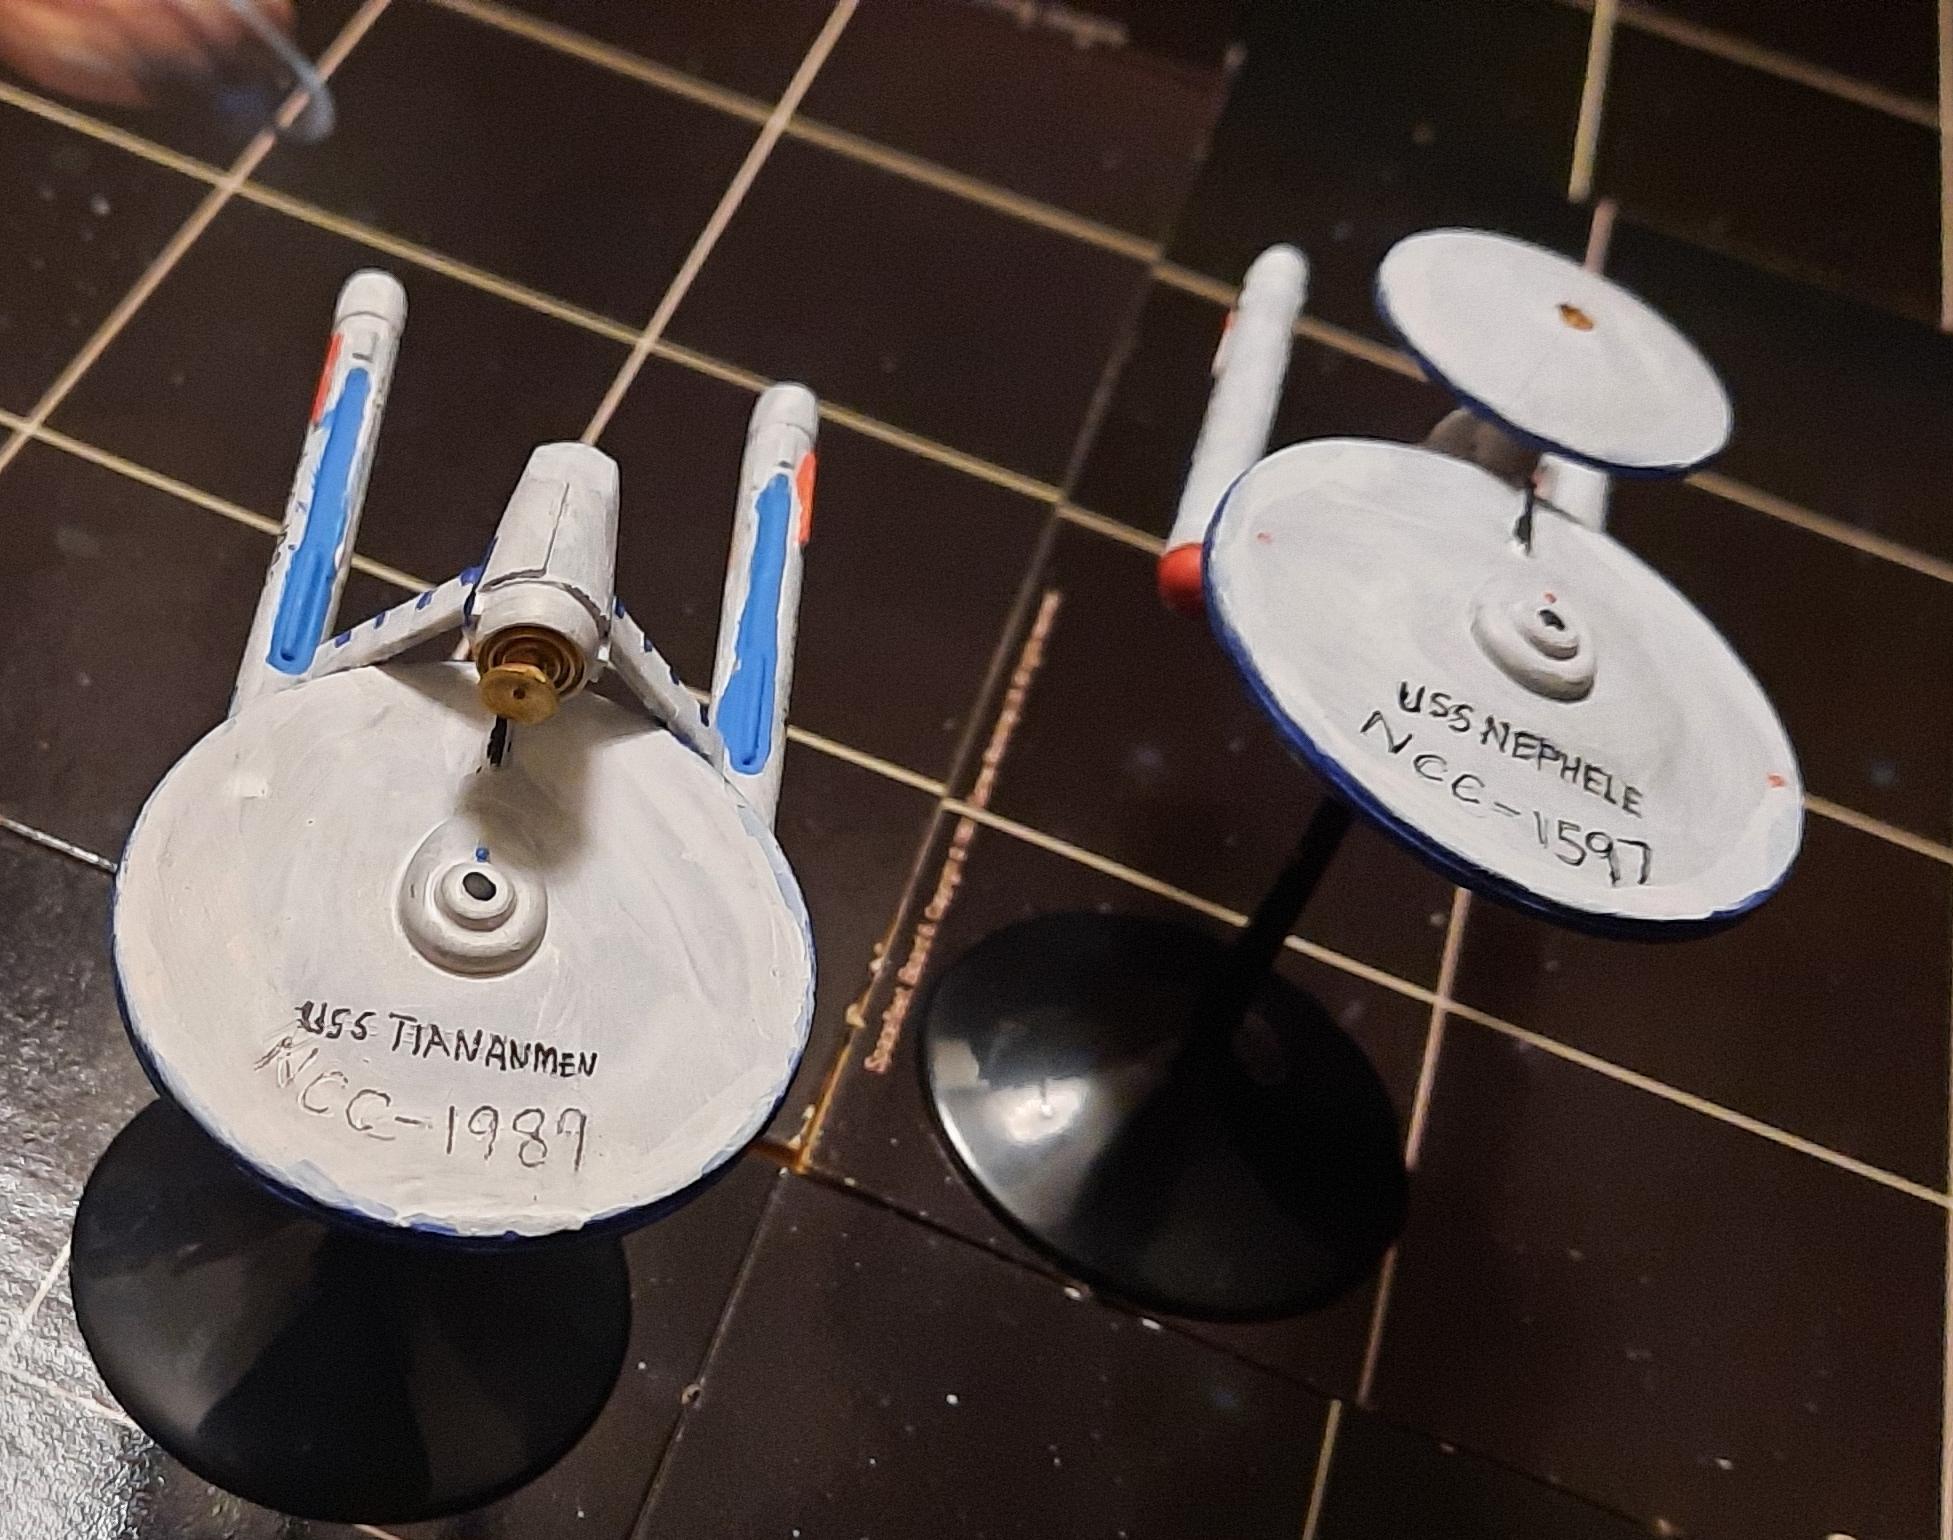 Federation, Kit Bash, Science Ships, Star Trek, Tos